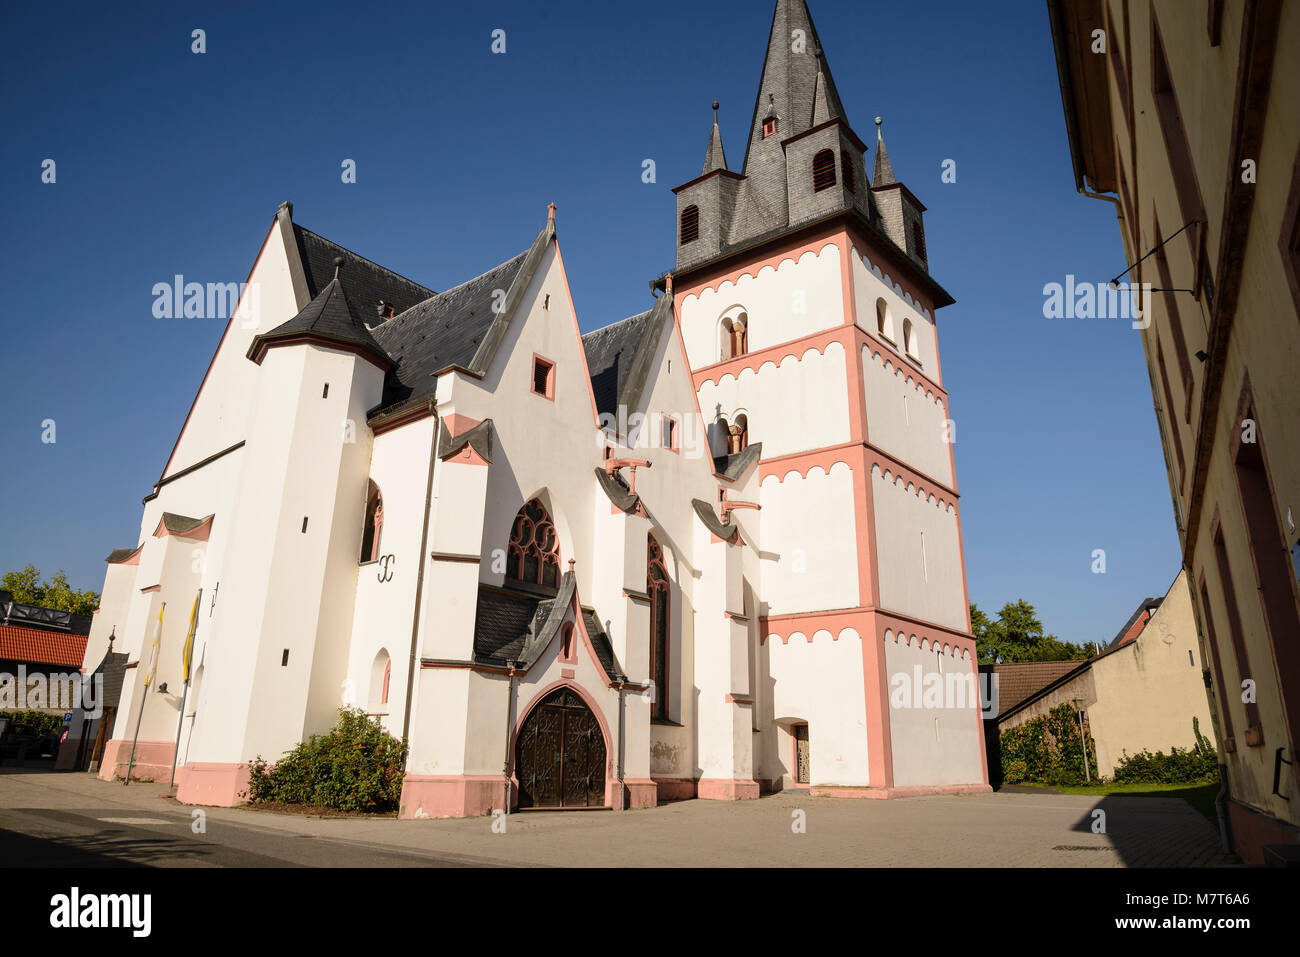 Pfarrkirche St. Martin, Oestrich-Winkel, Rheingau, Hessen, Deutschland Stock Photo